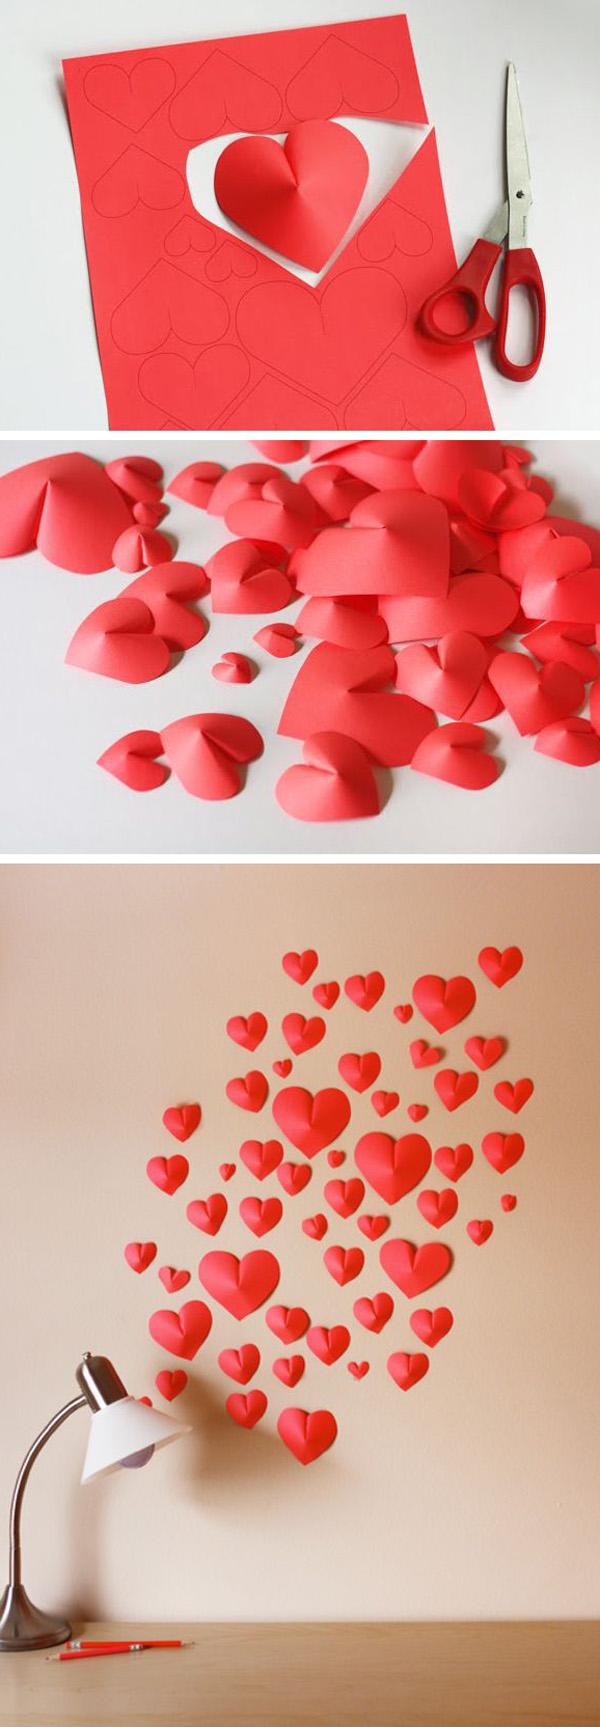 Φτιάξτε έναν τοίχο από καρδιές από χαρτί. Περιλαμβάνεται πρότυπο για λήψη